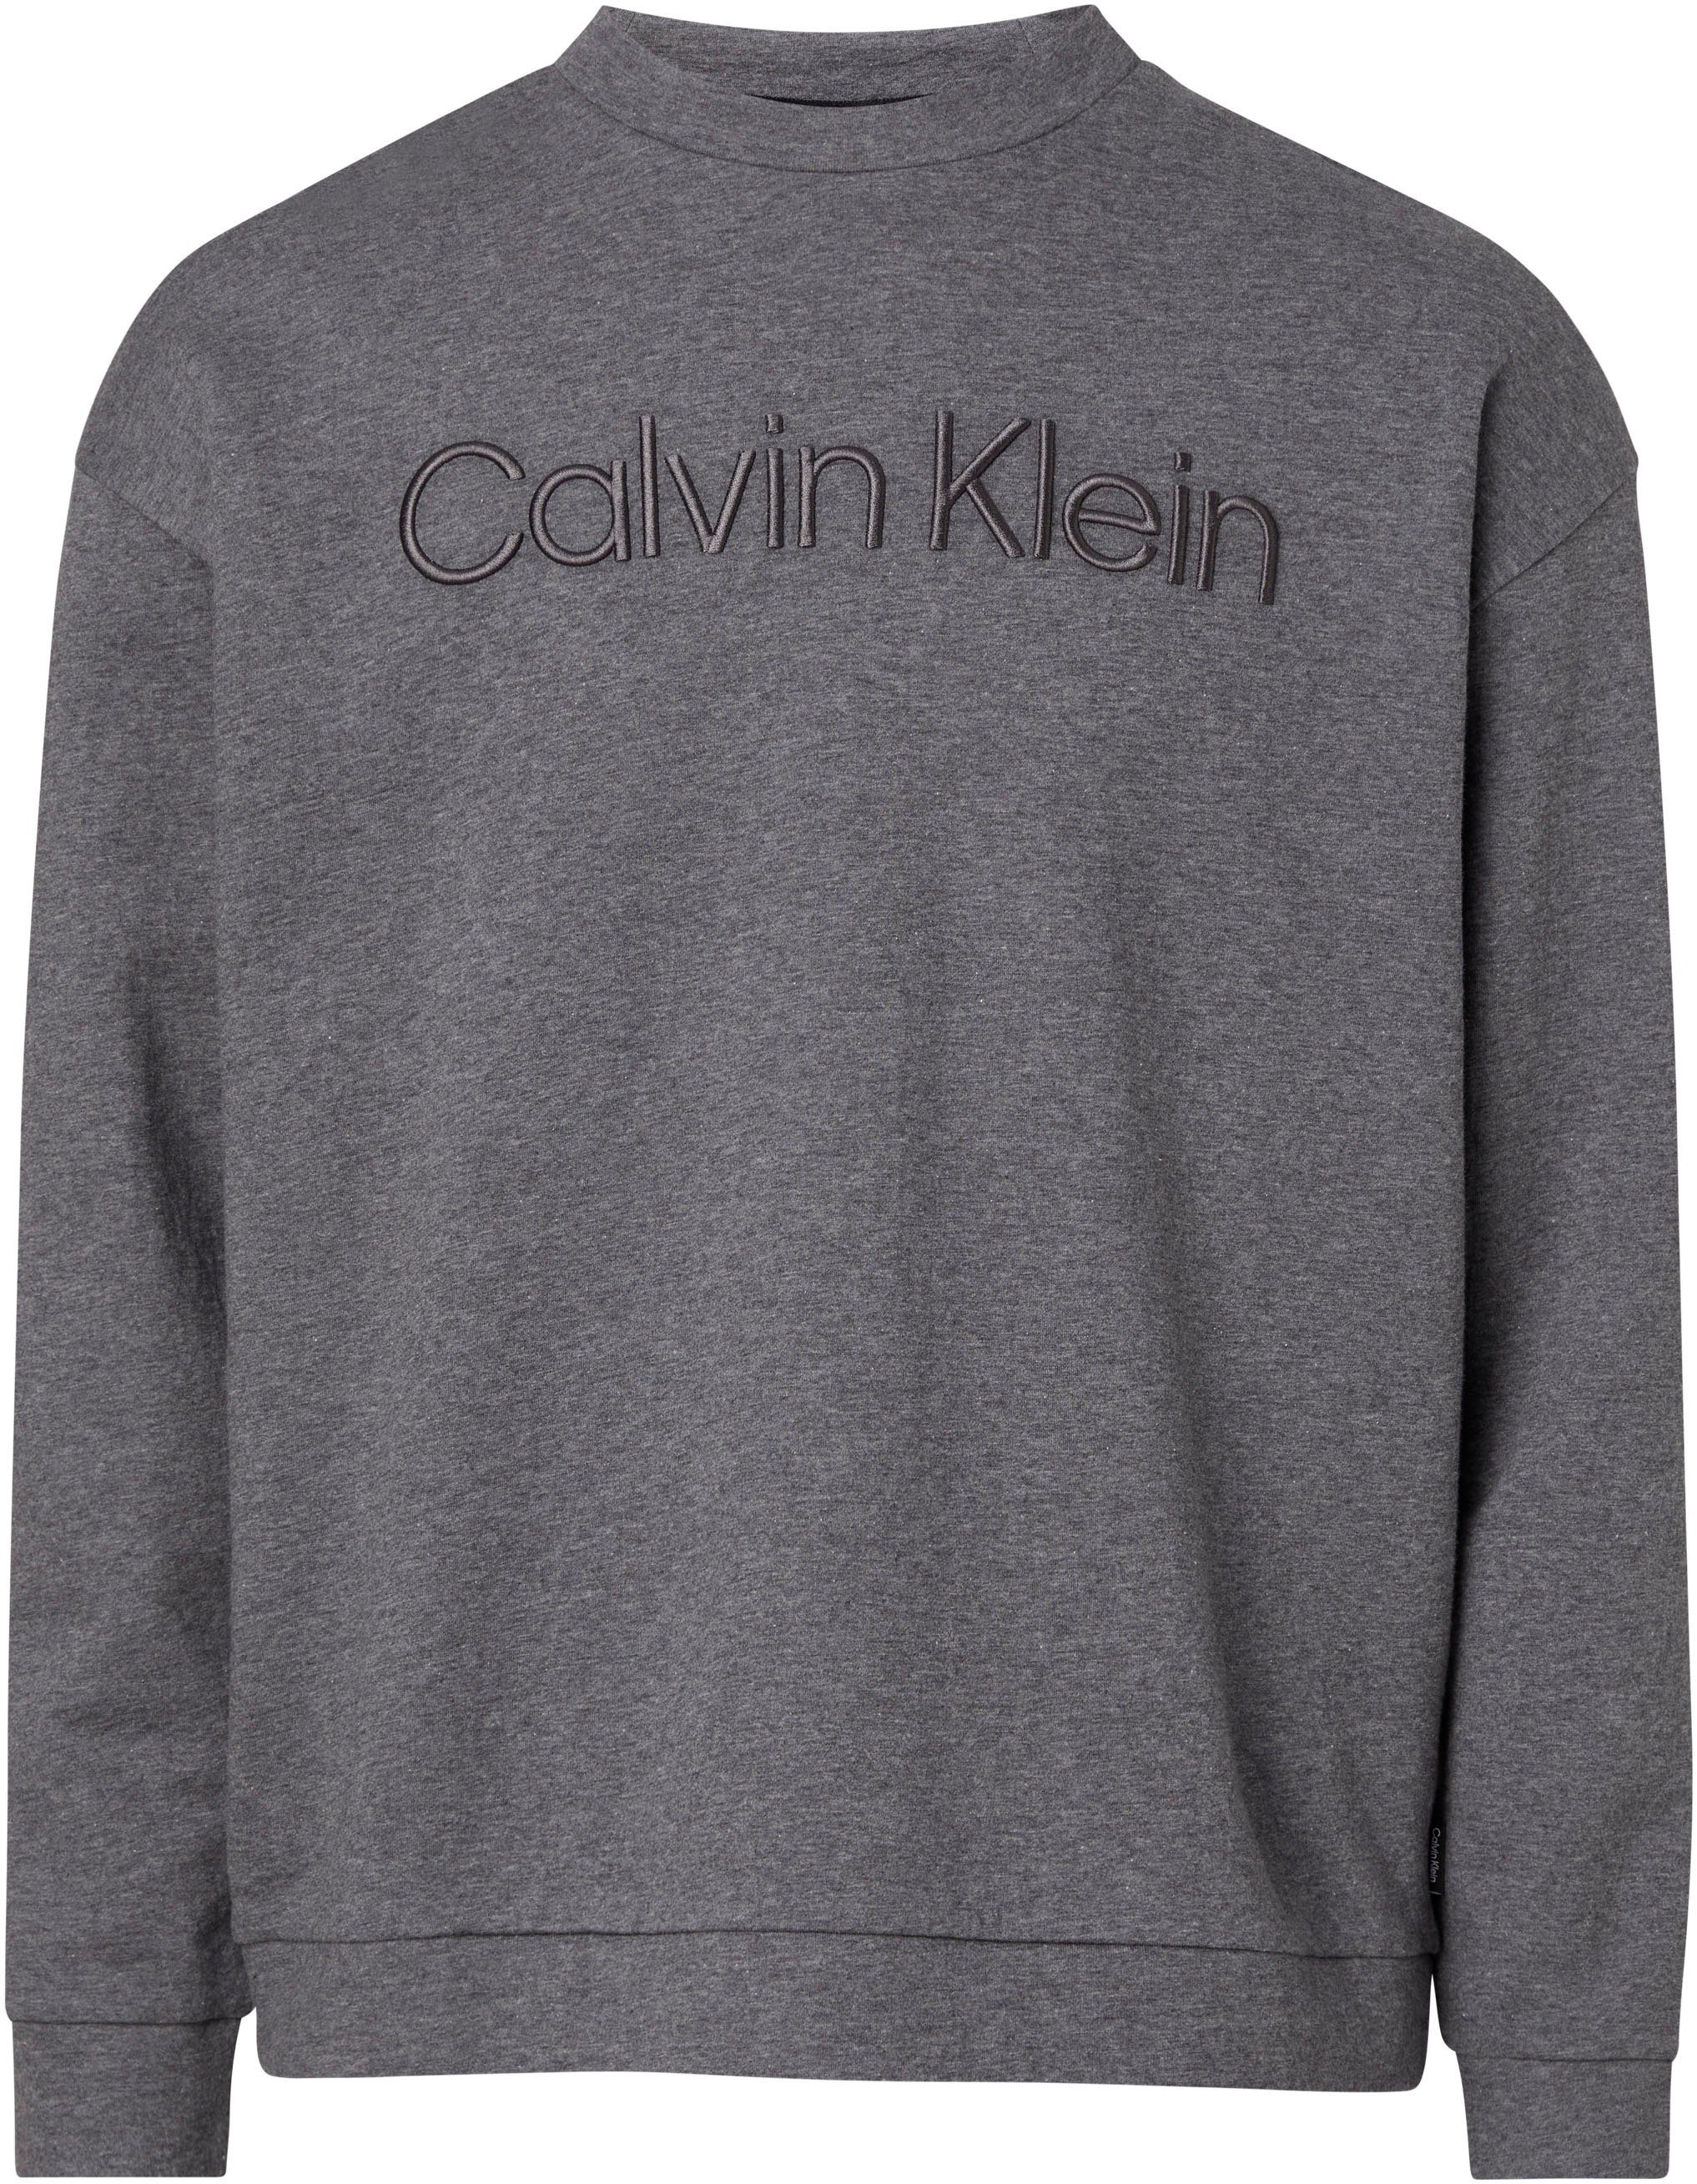 grey Calvin heather SWEATSHIRT Sweatshirt SPACER ICONIC Klein dark COMFORT